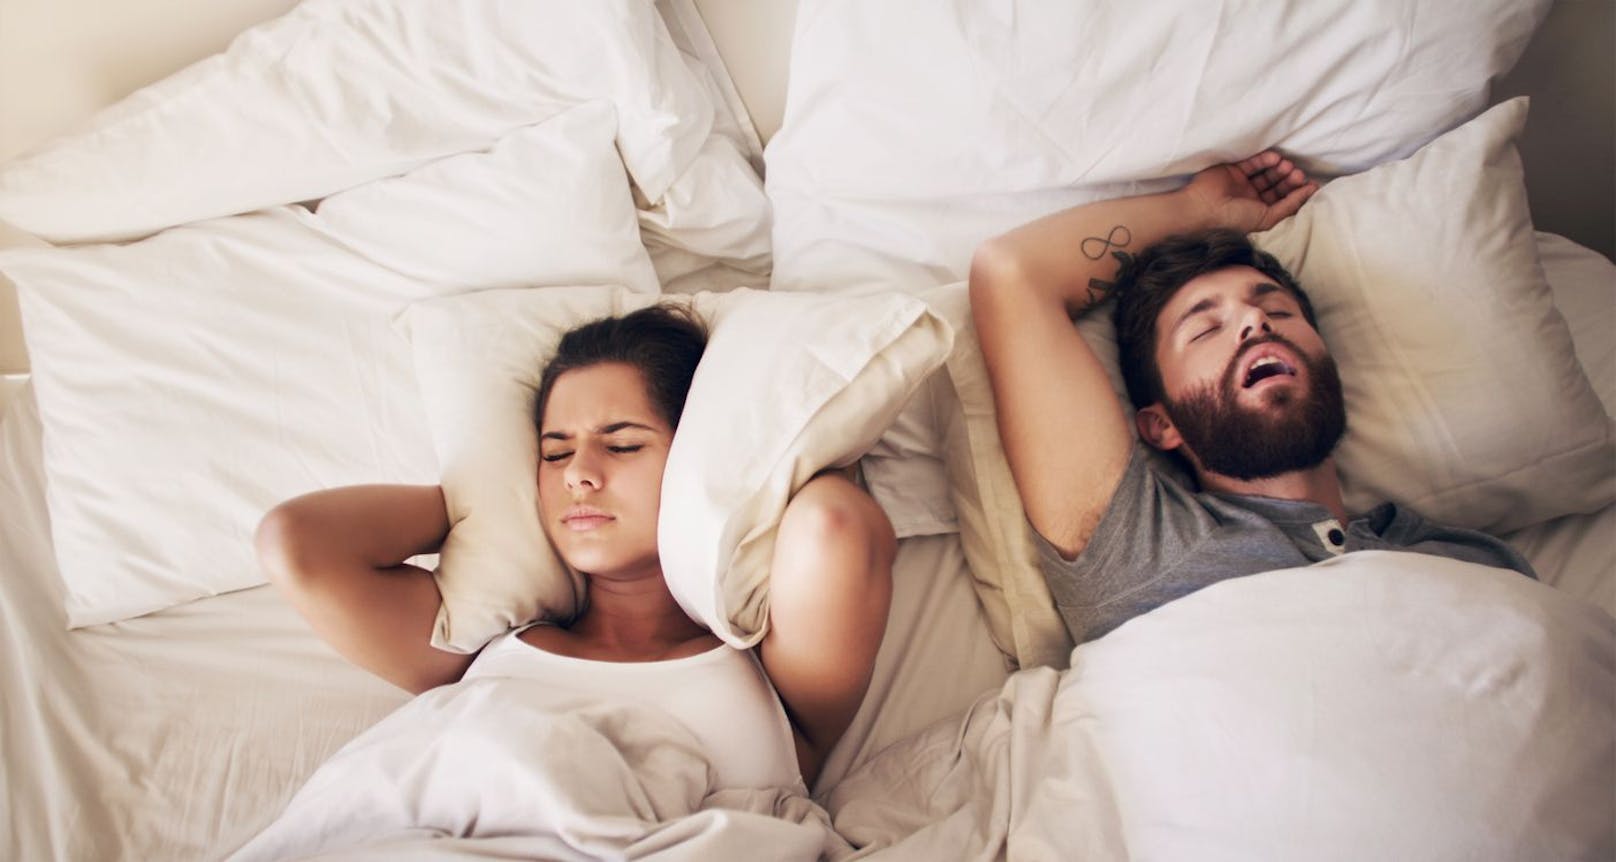 Laute Schnarchgeräusche im Bett rauben einem oftmals den Schlaf.